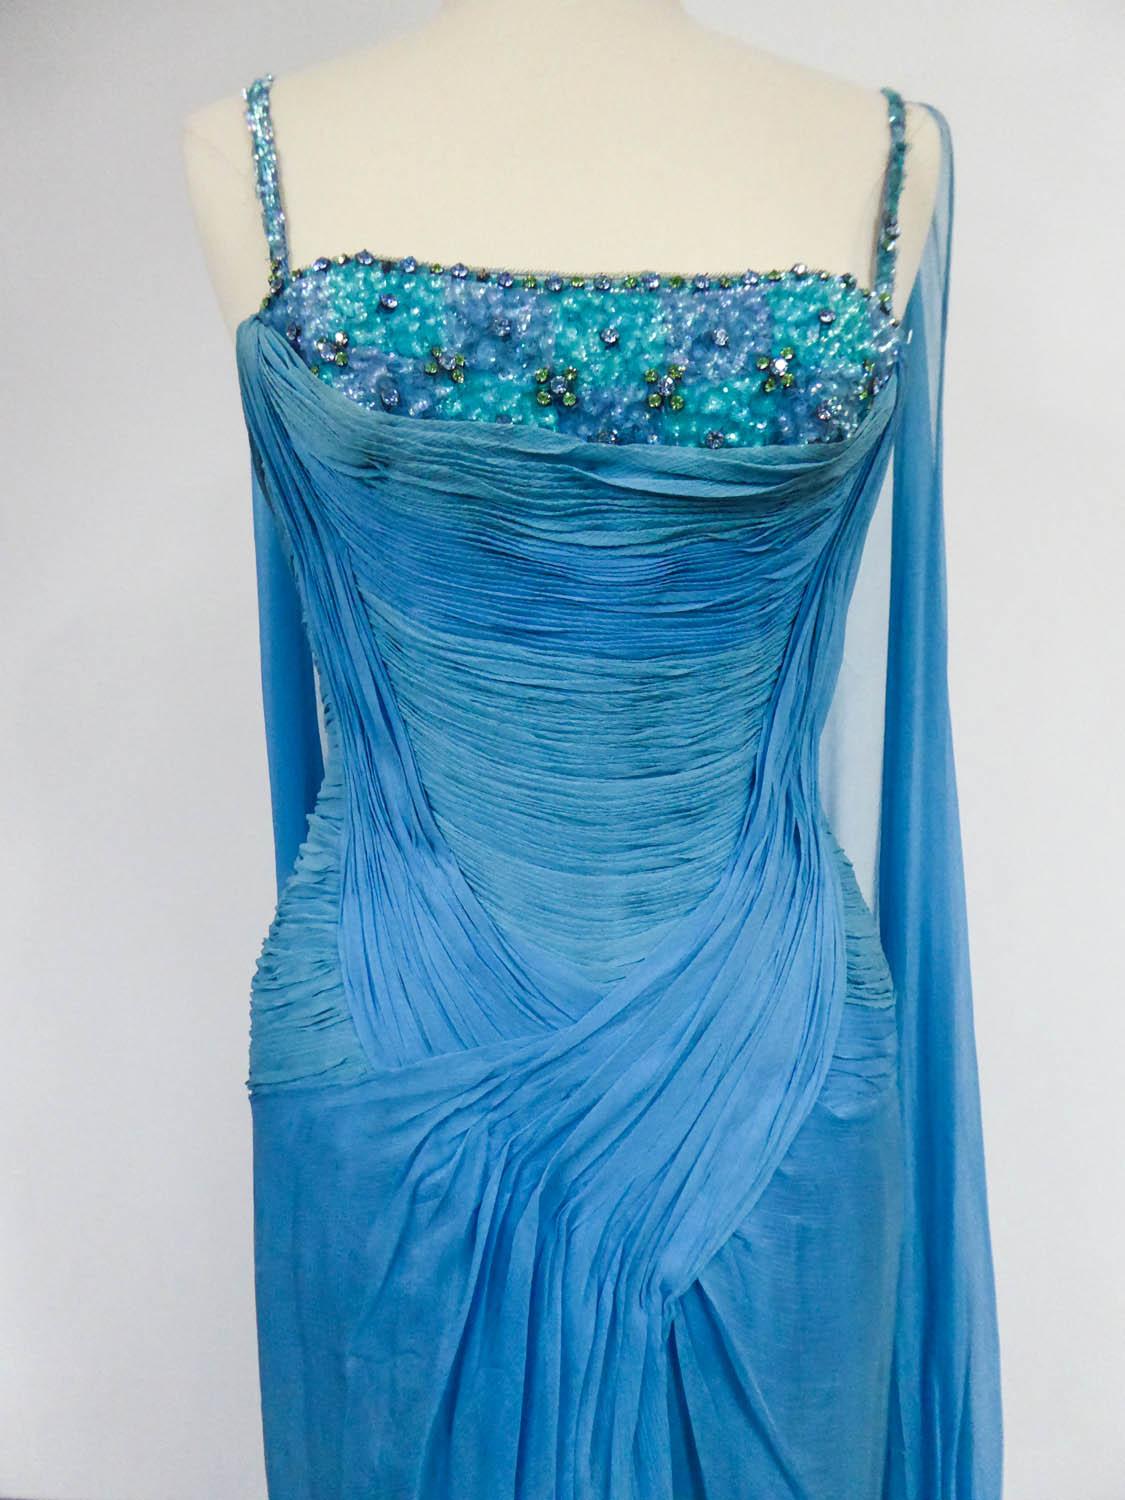 Circa 1960/1970
France

Robe de soirée Haute Couture de Carven House Designer en mousseline de soie bleue des années 60/70. Bustier à fines bretelles et grand décolleté brodé de paillettes bleues et vertes en roses et cabochons sertis de perles de